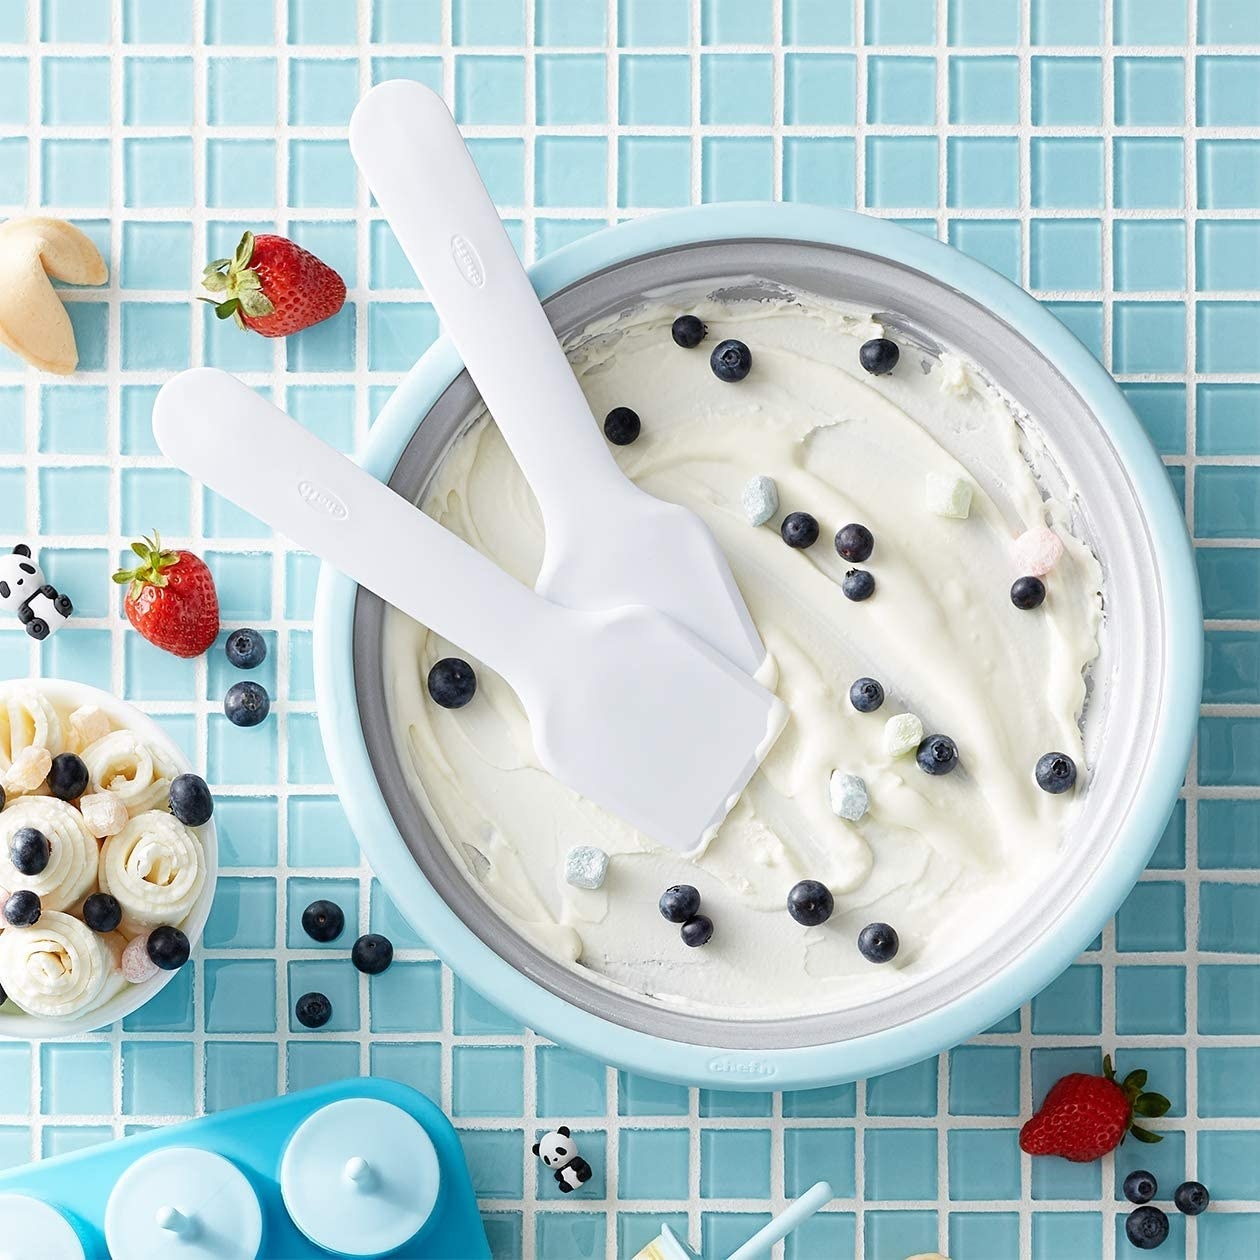 The ice cream mixer with vanilla ice cream and berries on it